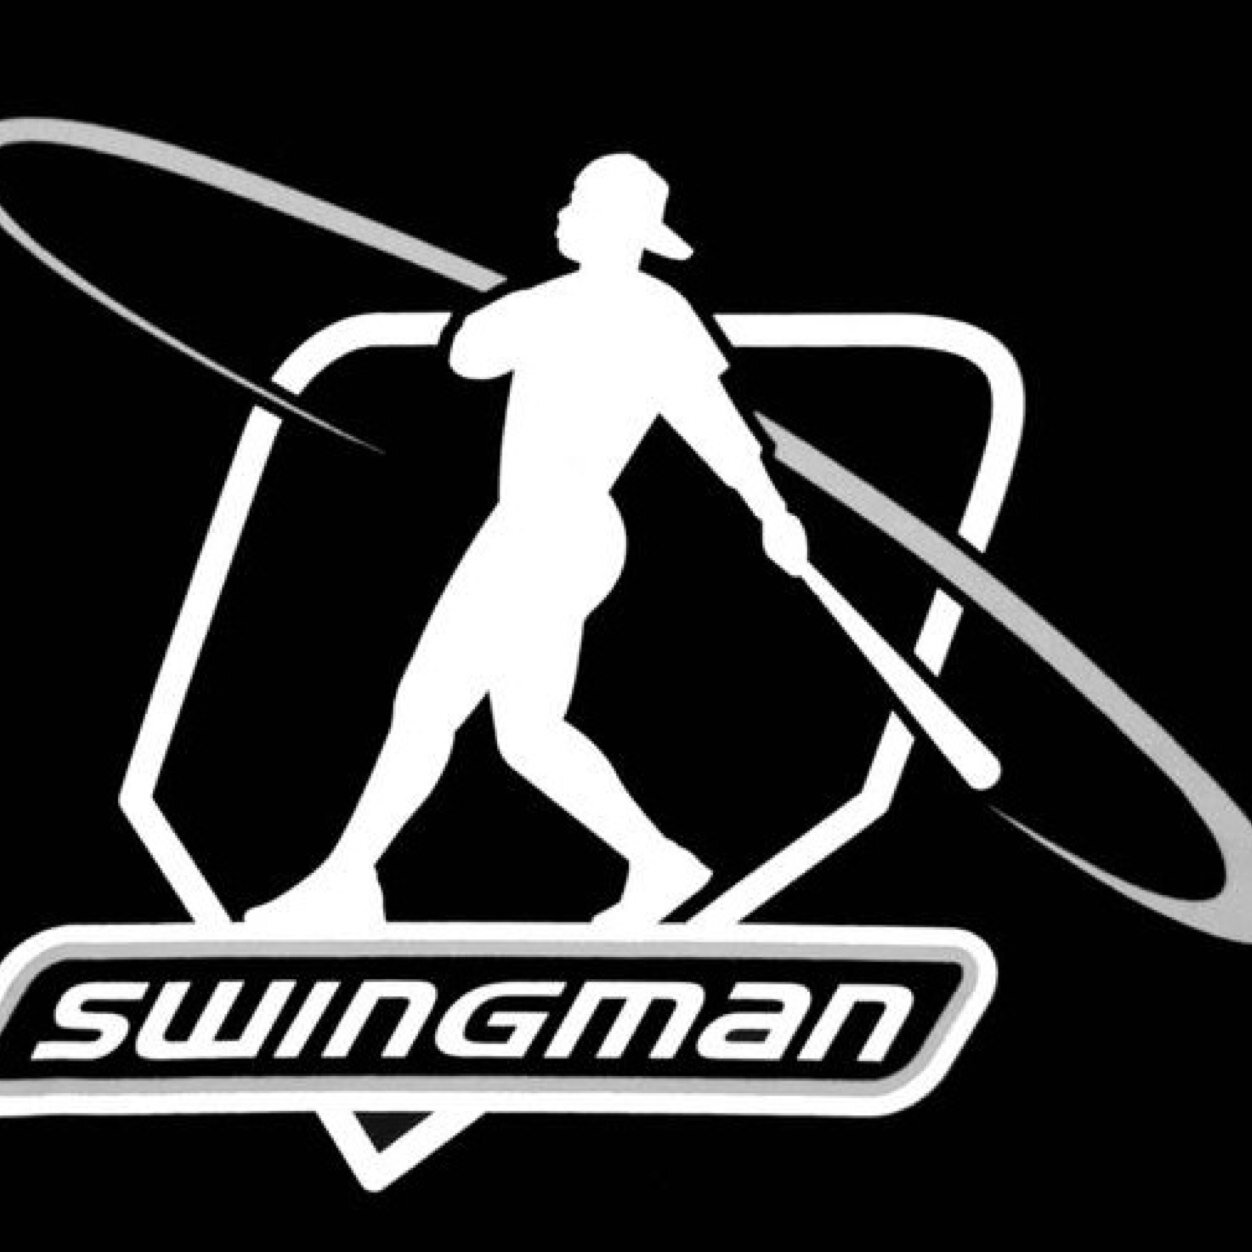 ken griffey jr swingman logo